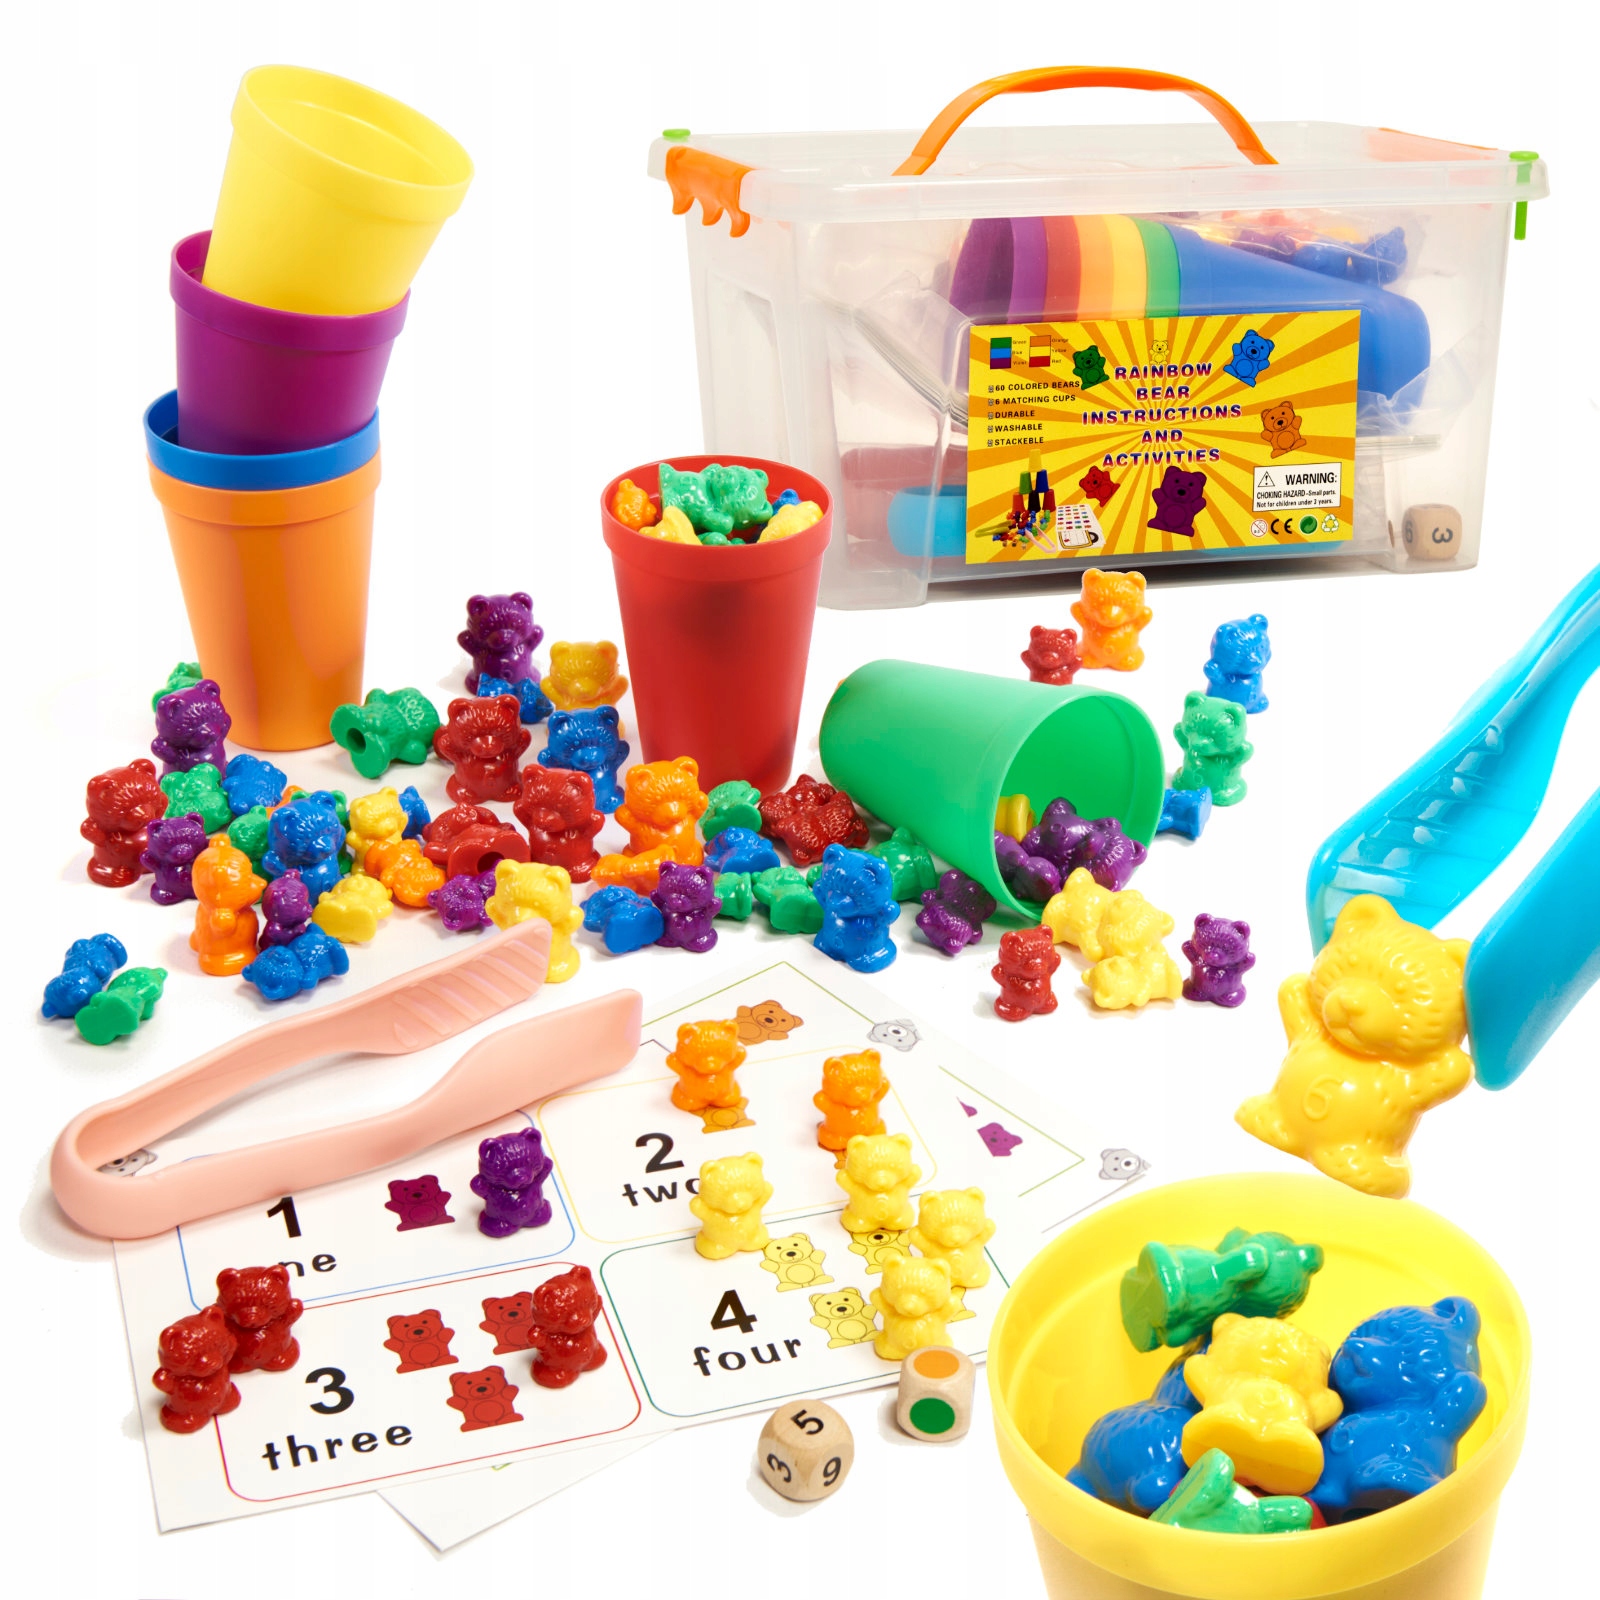 Zabawki edukacyjne Montessori dla dzieci w wieku 3 lata + - Allegro.pl